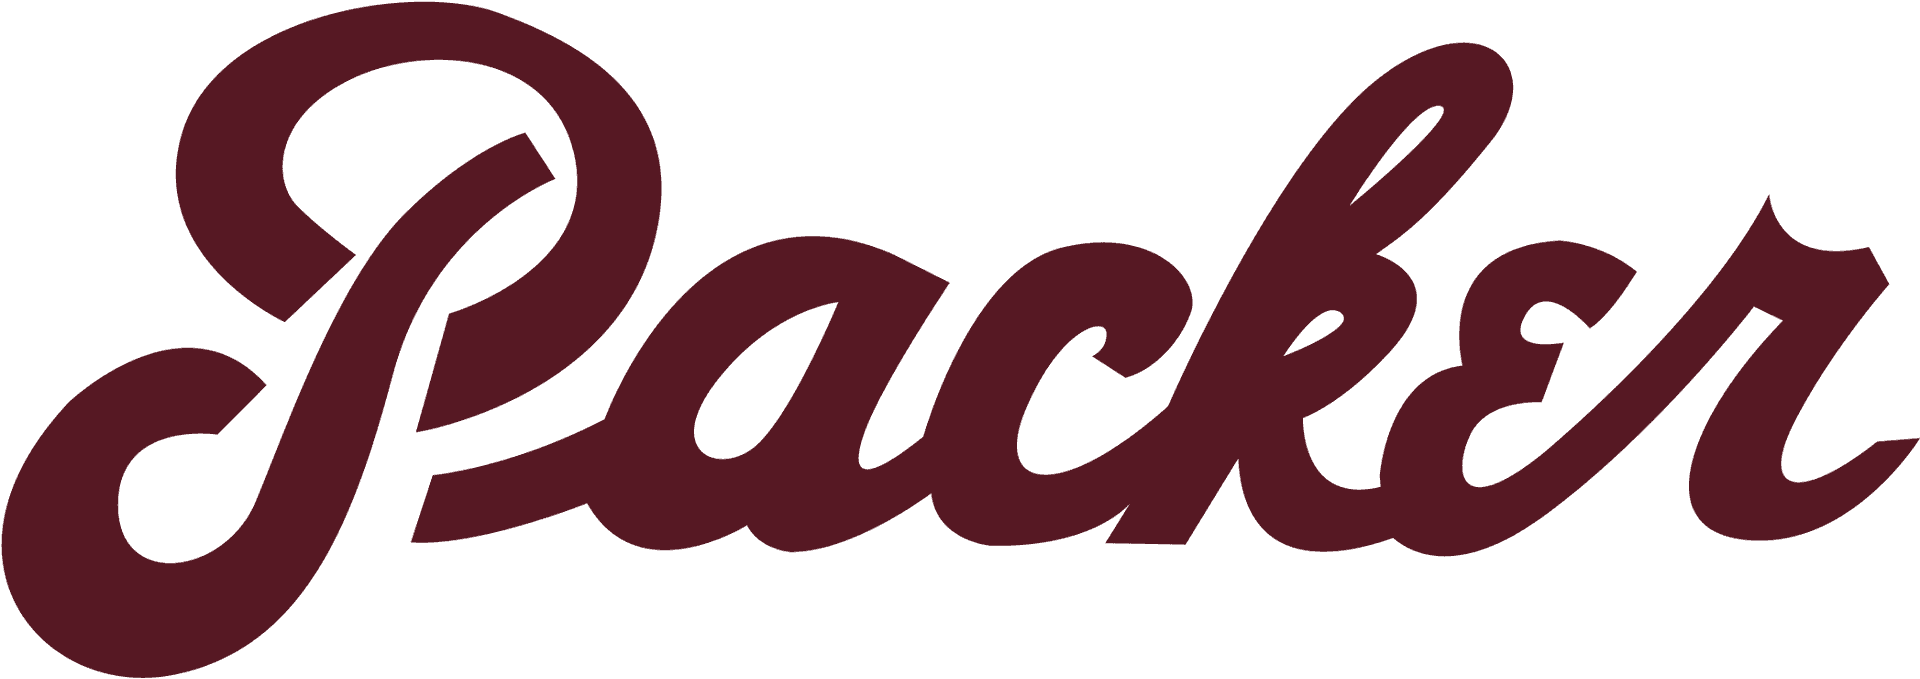 Packer Script Logo PNG